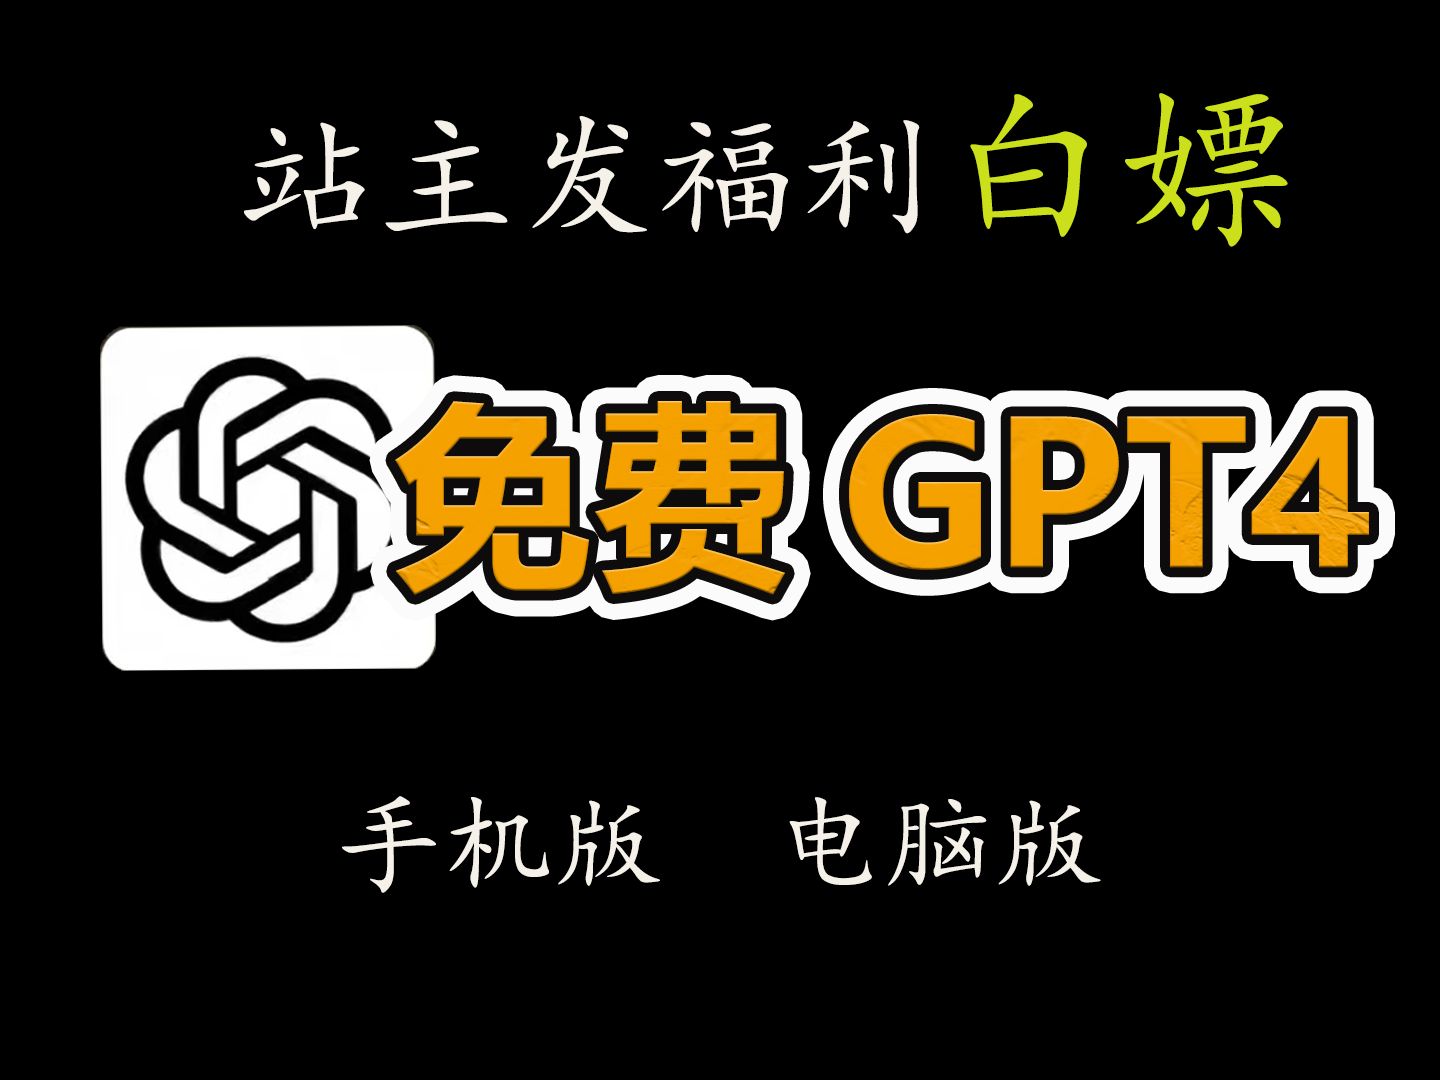 【国内免费白嫖】4月26日最新ChatGPT4.0免费使用